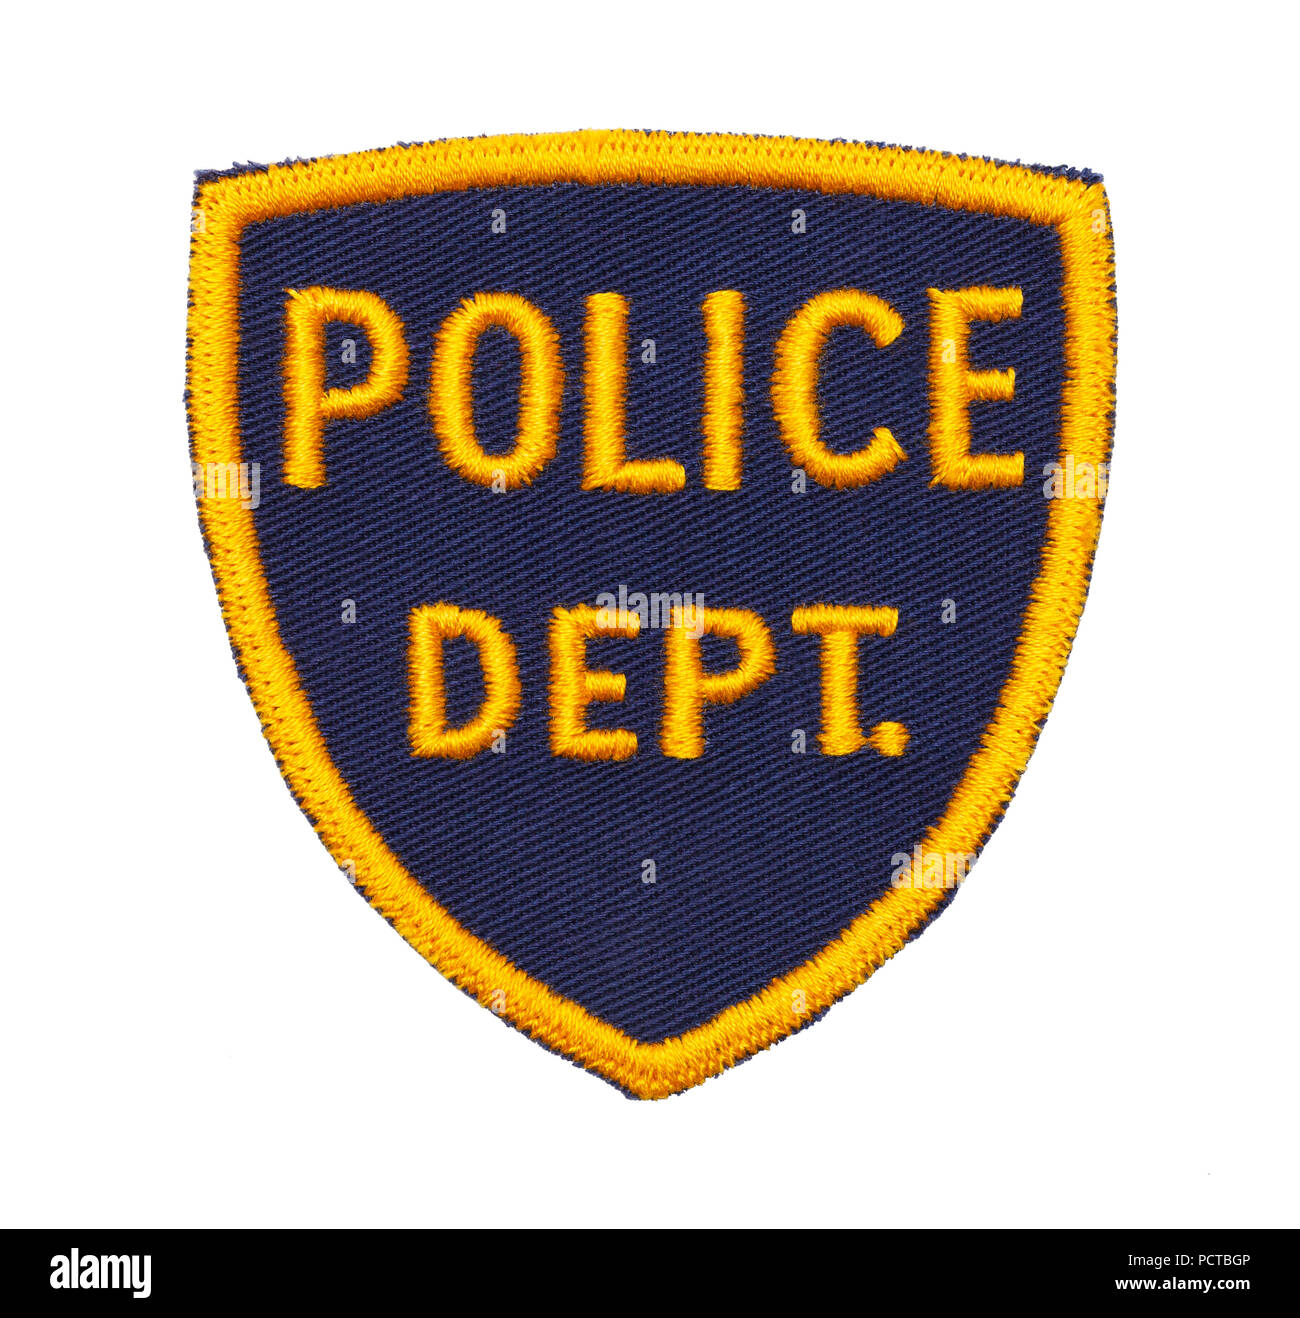 Piccolo del Dipartimento di Polizia di patch di protezione isolati su uno sfondo bianco. Foto Stock